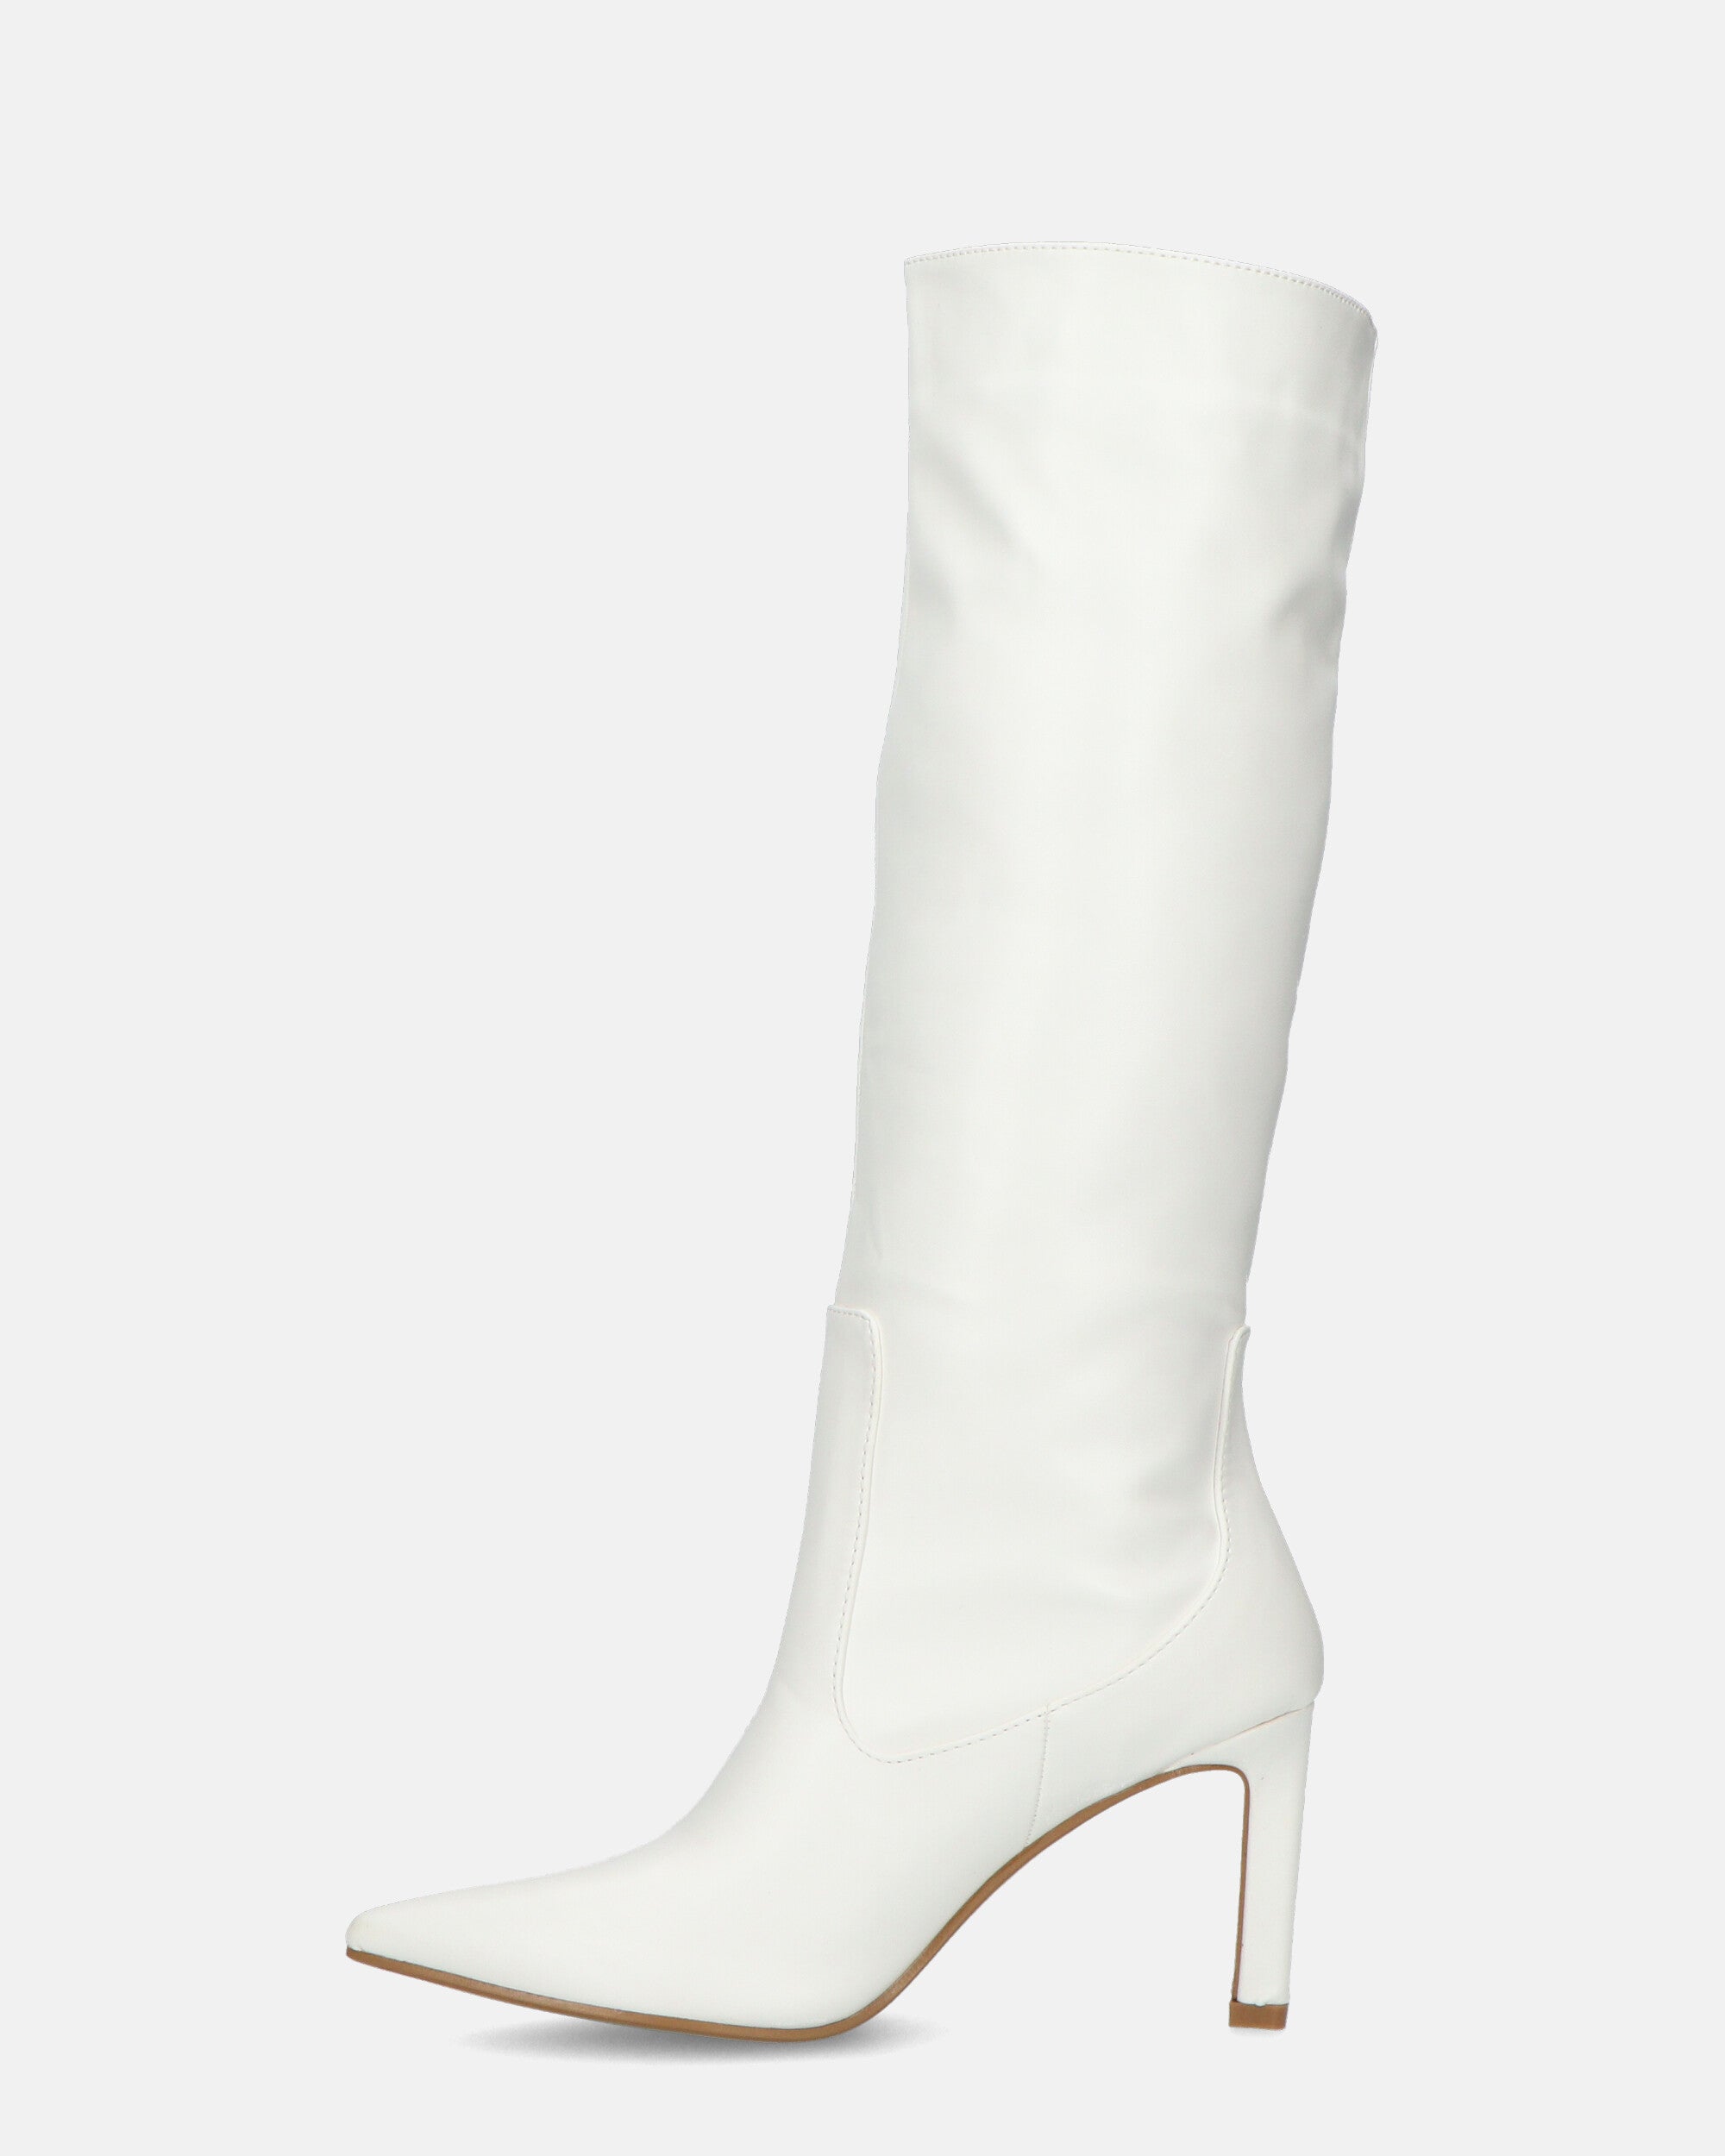 CAROLINE - bota blanca con tacón en cuero blanco